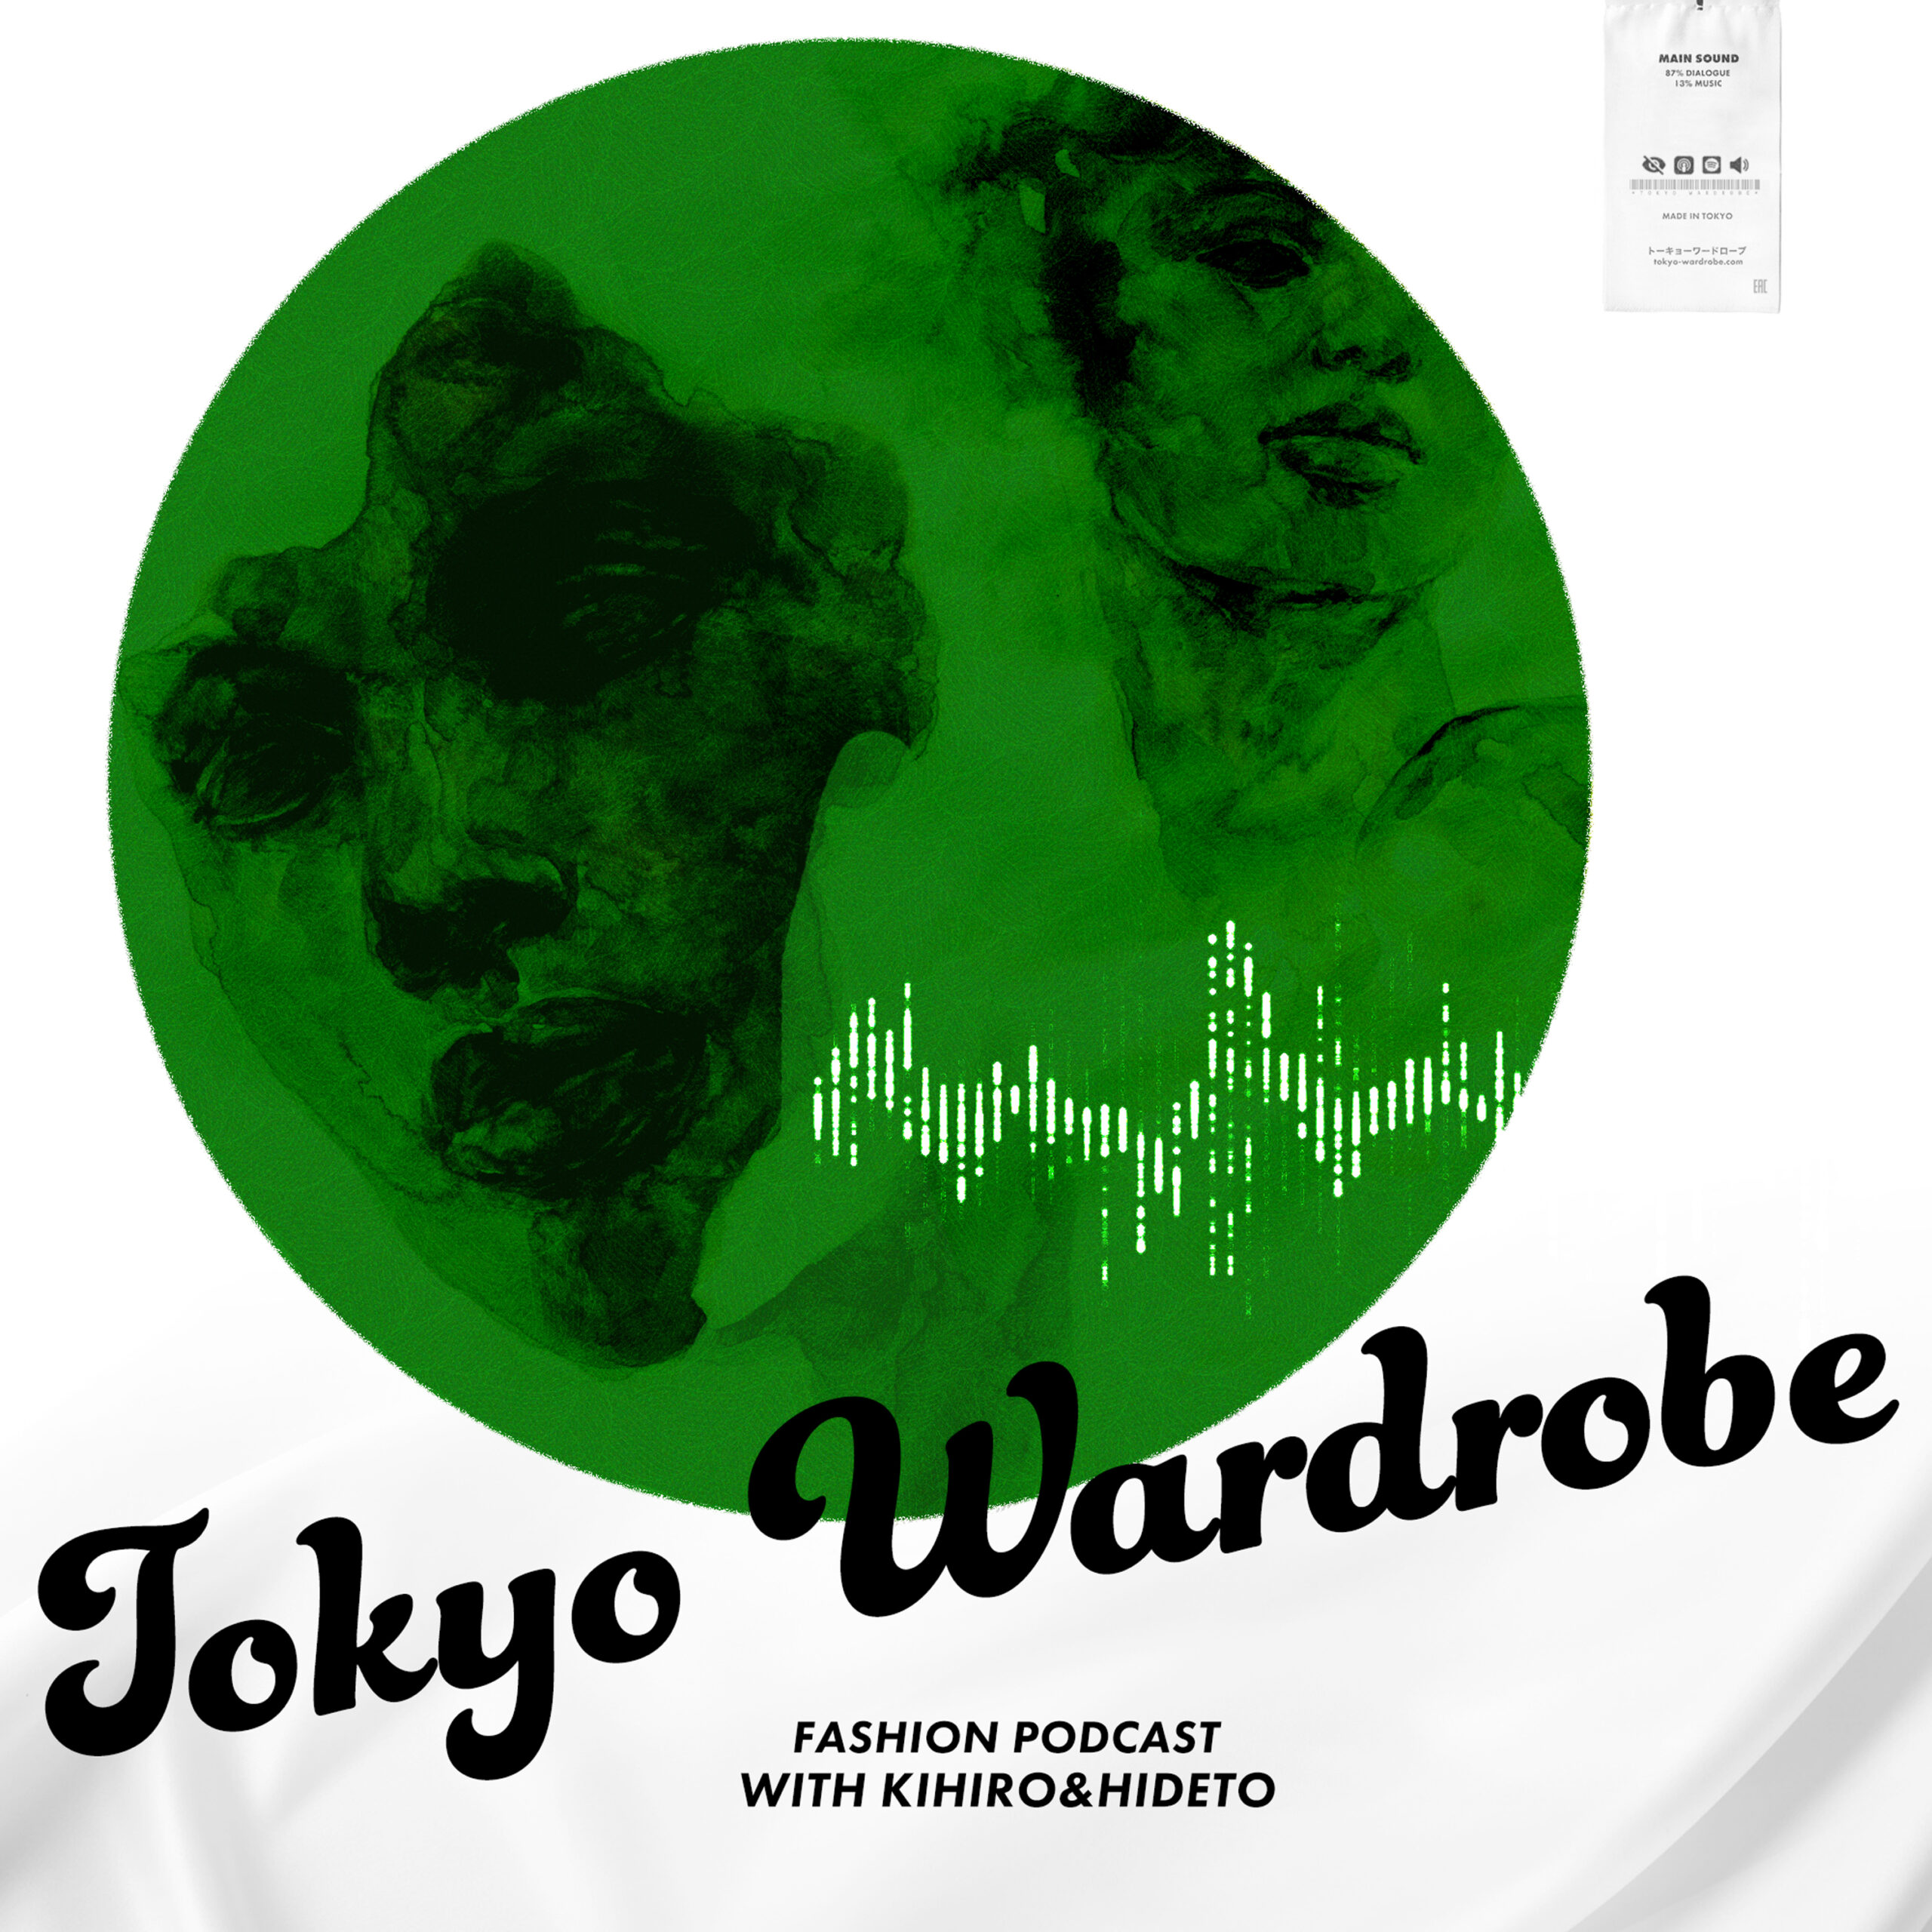 ブランドを知るための”ファーストステップ” – TOKYO WARDROBE